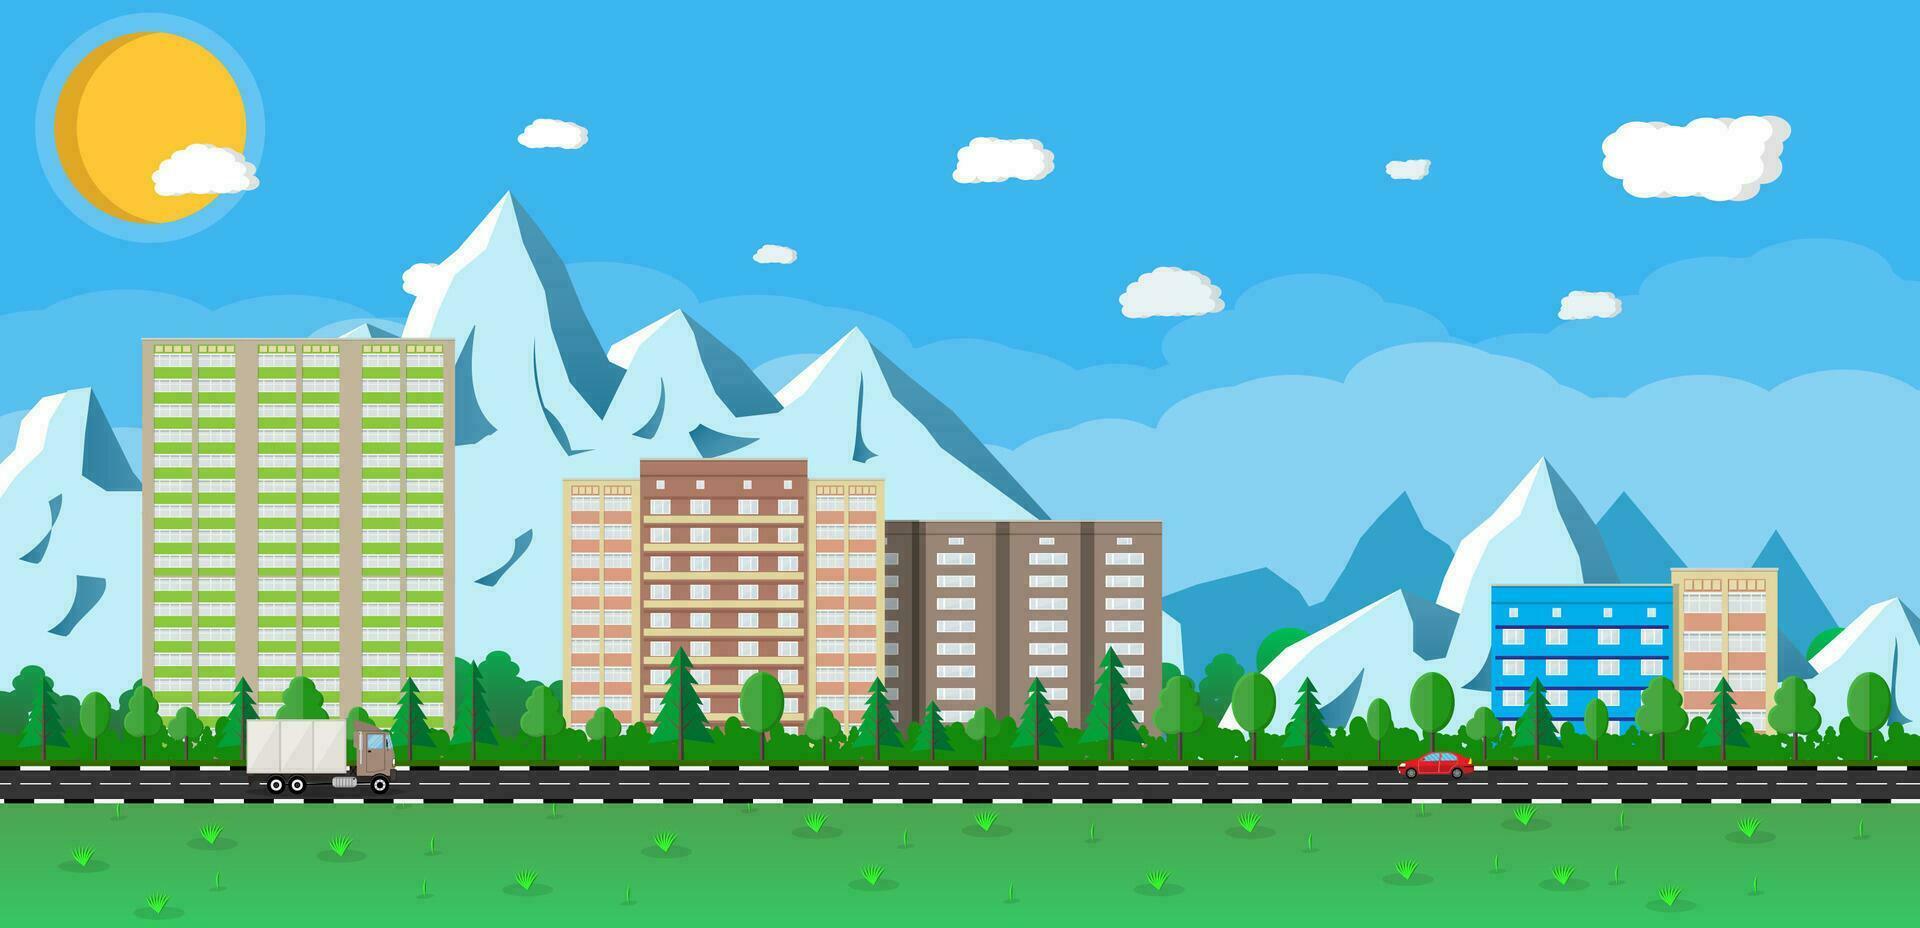 pequeño ciudad paisaje. casas en el montañas entre el arboles la carretera con carros. azul cielo con Dom y nubes vector ilustración en plano tyle